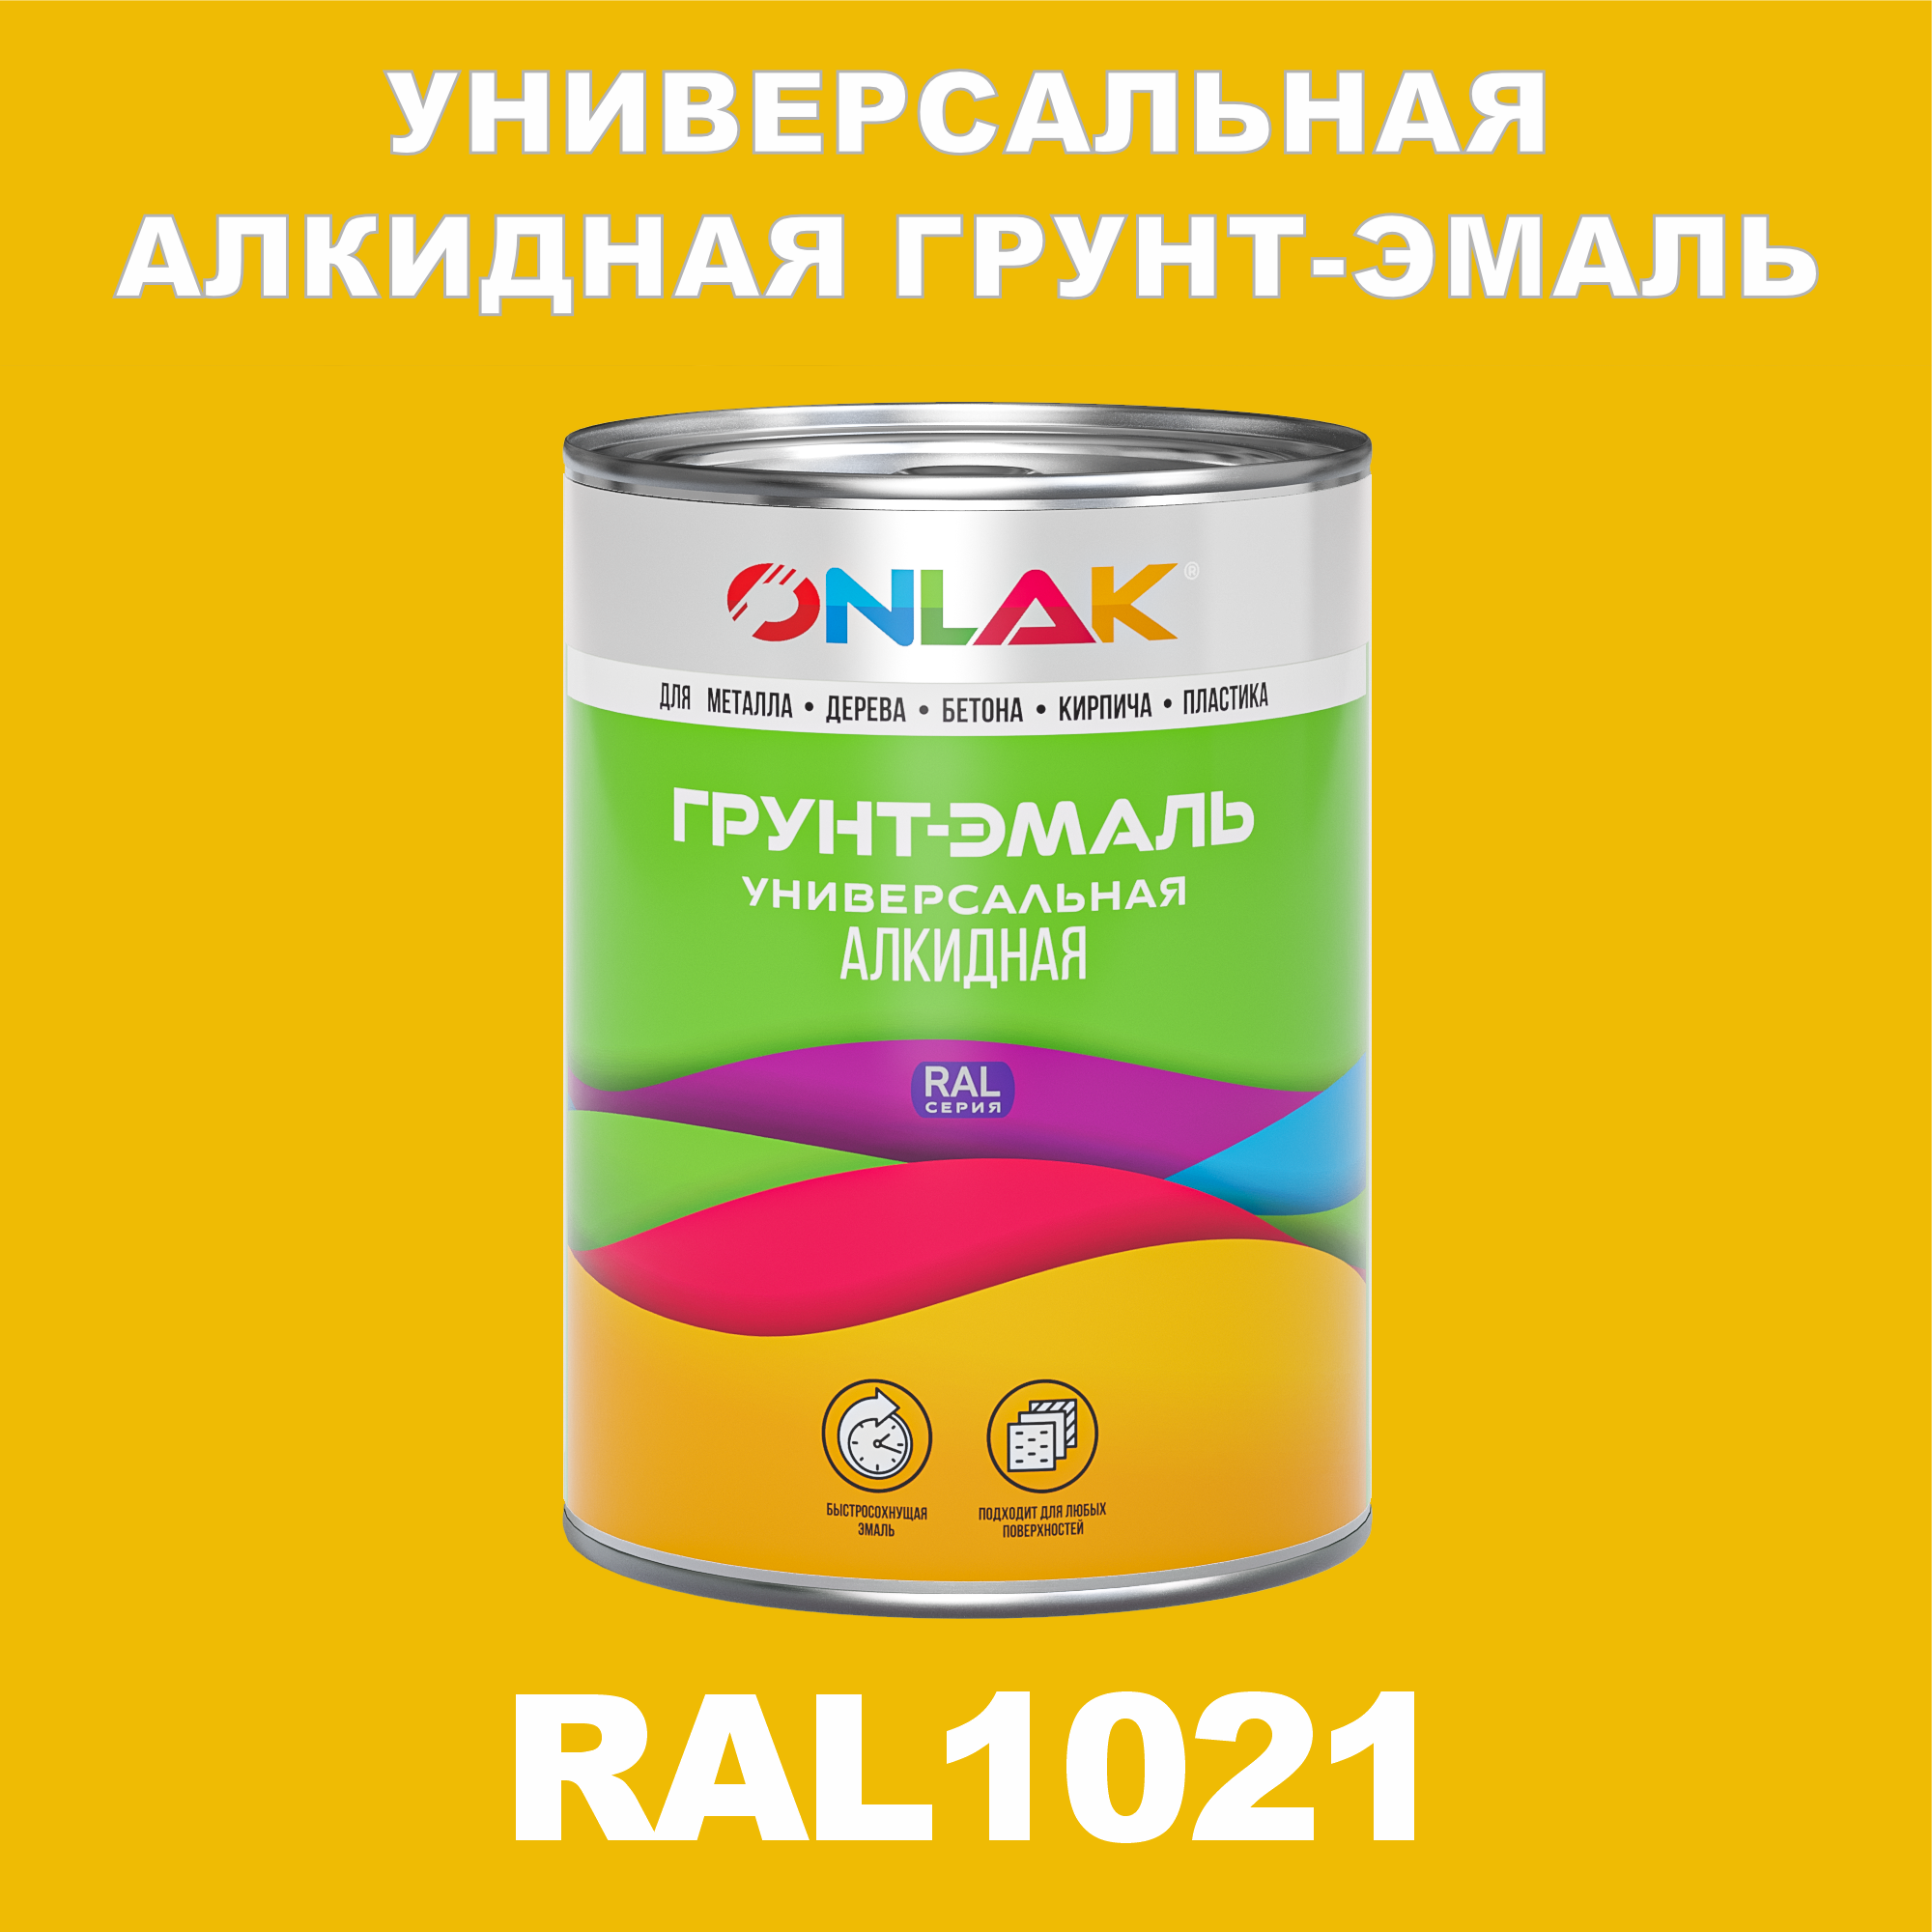 Грунт-эмаль ONLAK 1К RAL1021 антикоррозионная алкидная по металлу по ржавчине 1 кг грунт для масла mighty oak